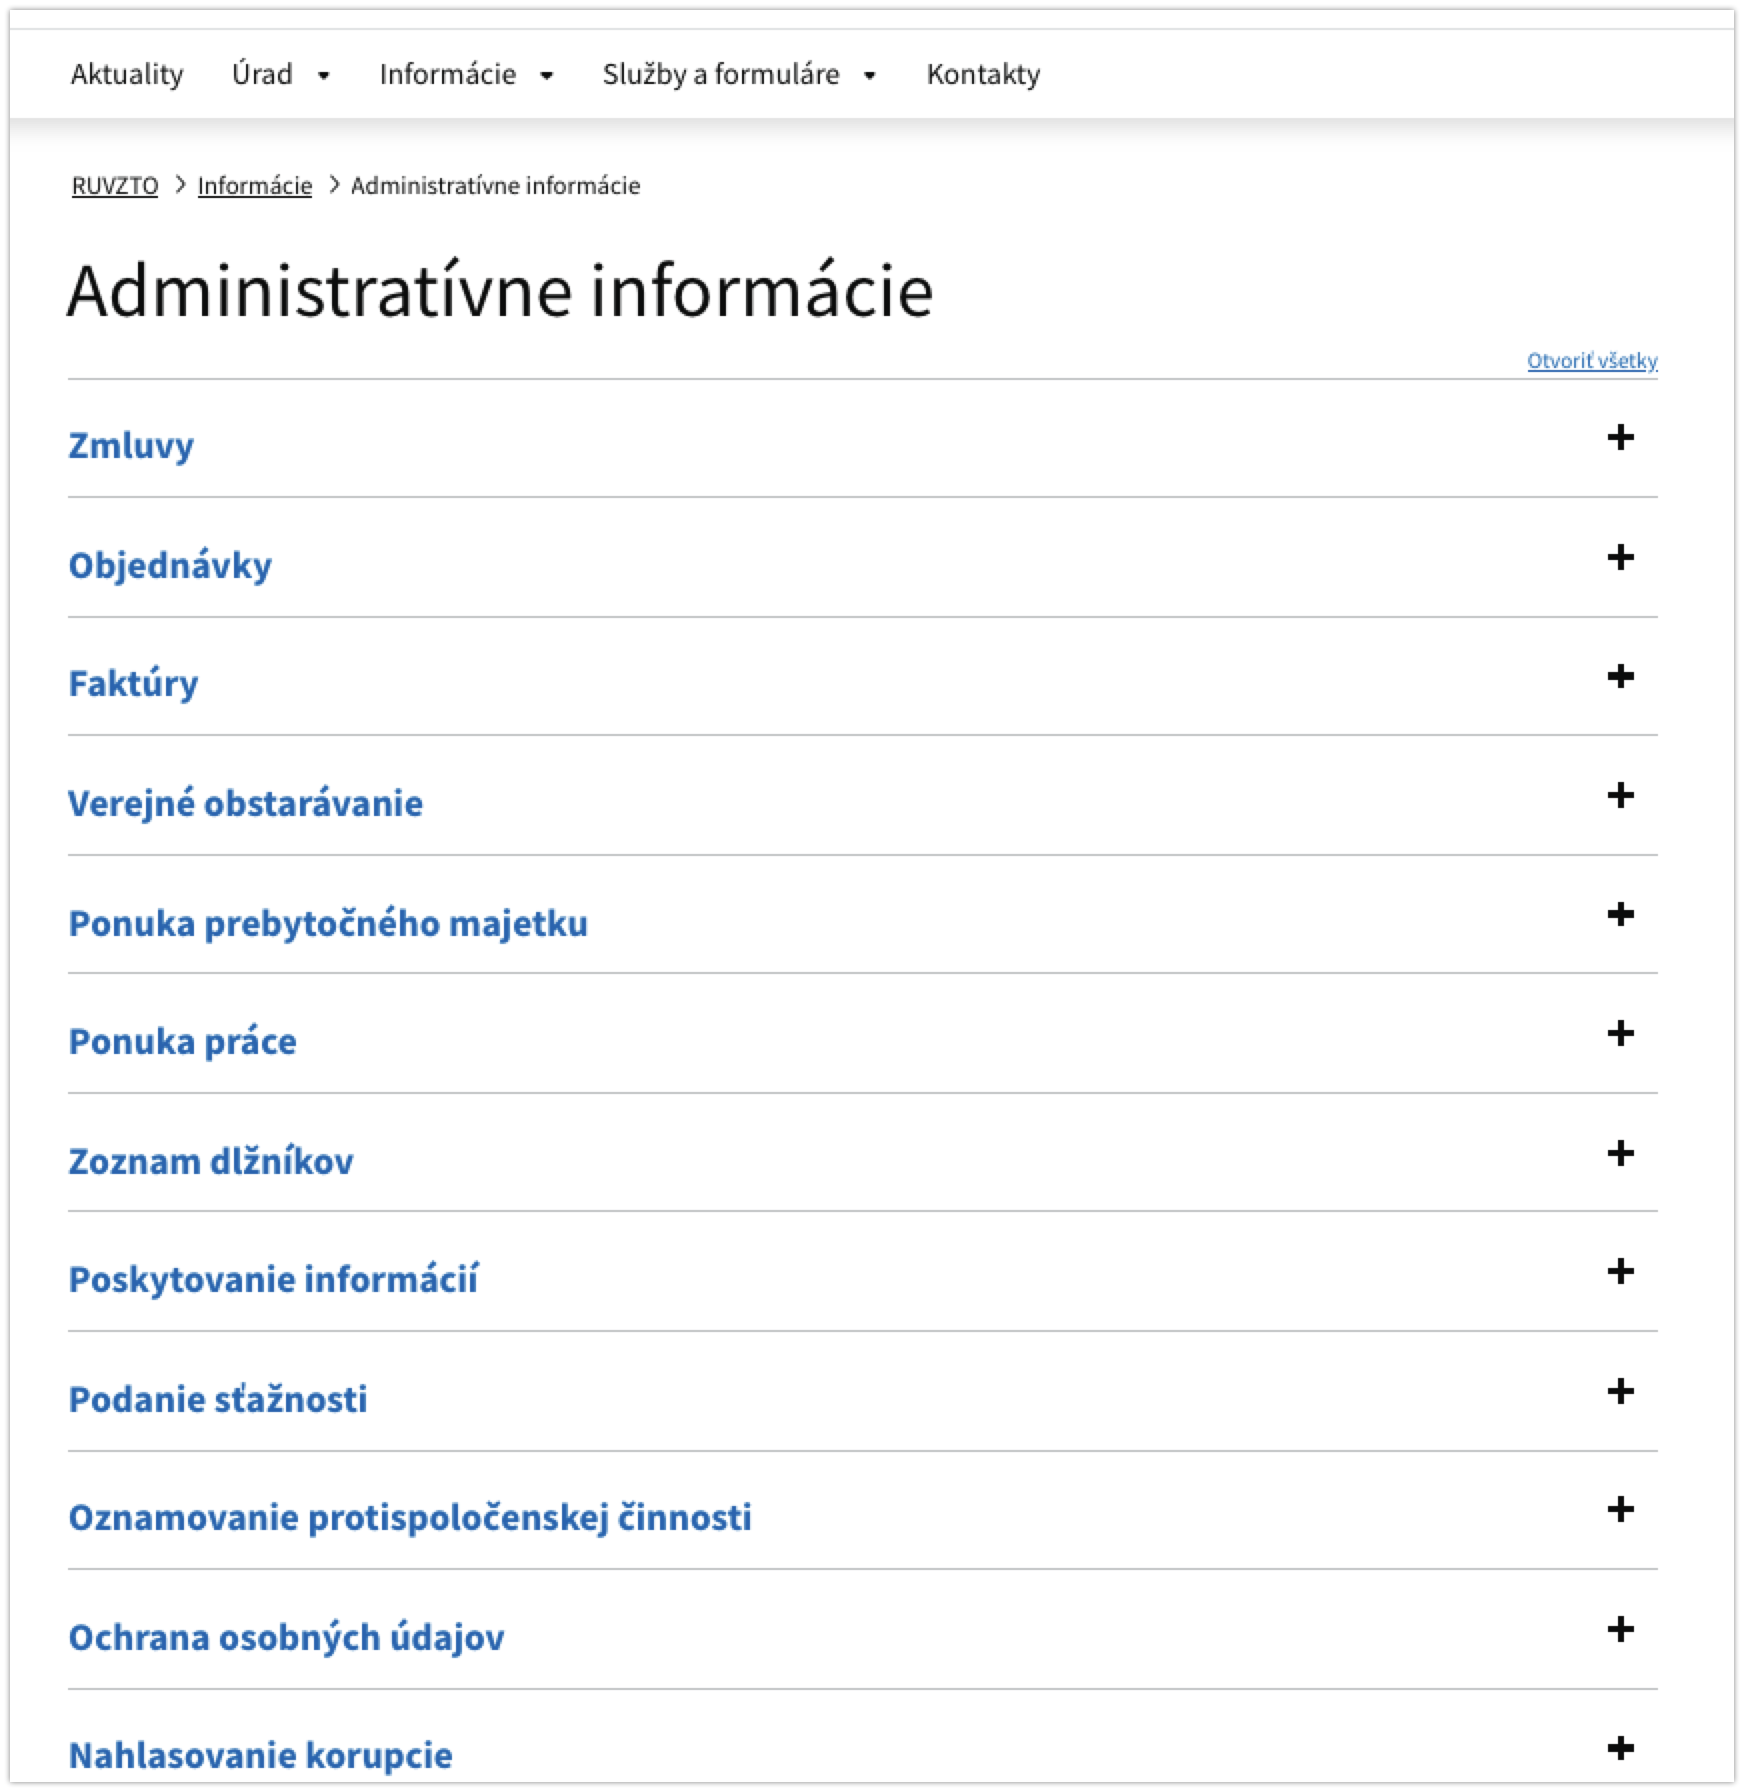 Adminnistratívne informácie - obsah stránky